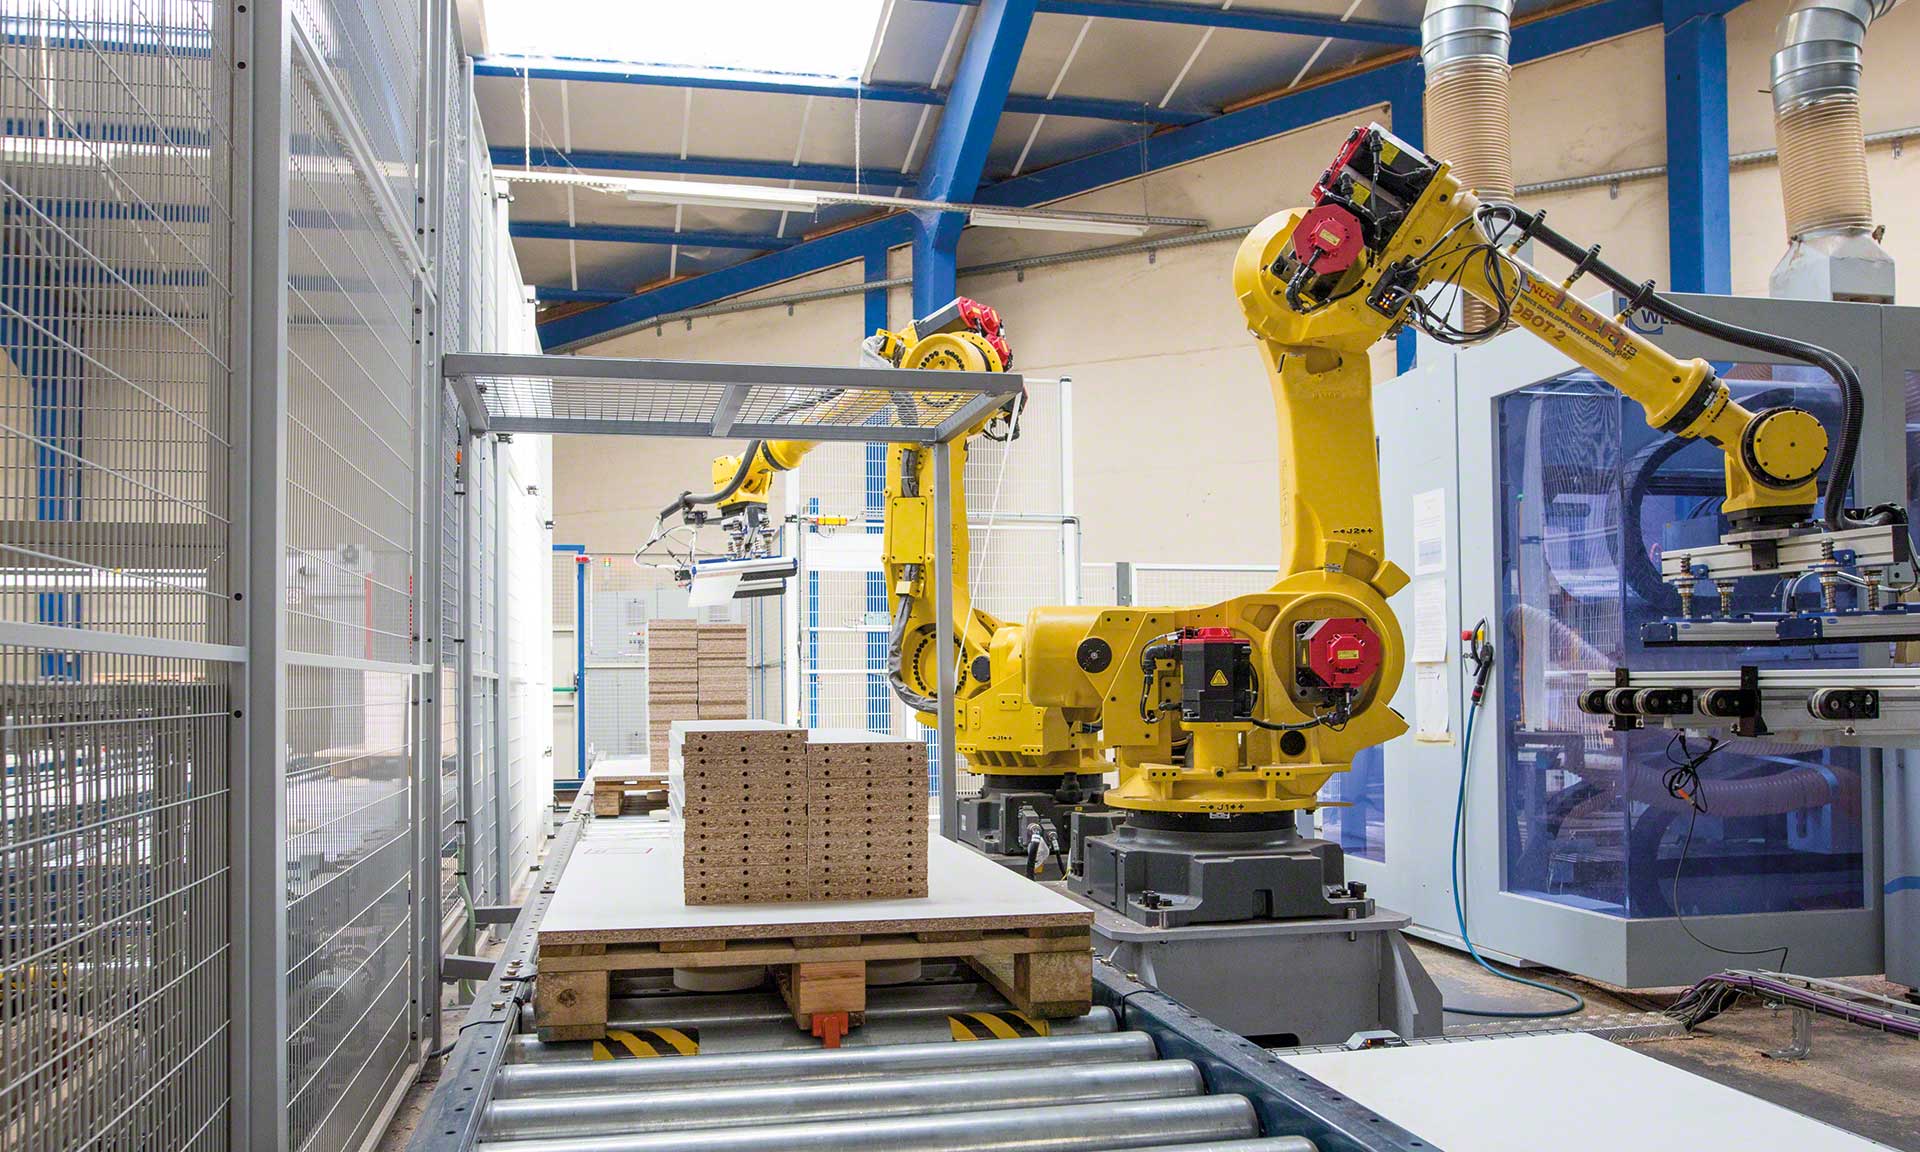 Zastosowanie robotów do kompletacji w magazynie pozwala zwiększyć tempo i dokładność procesu przygotowywania zamówień